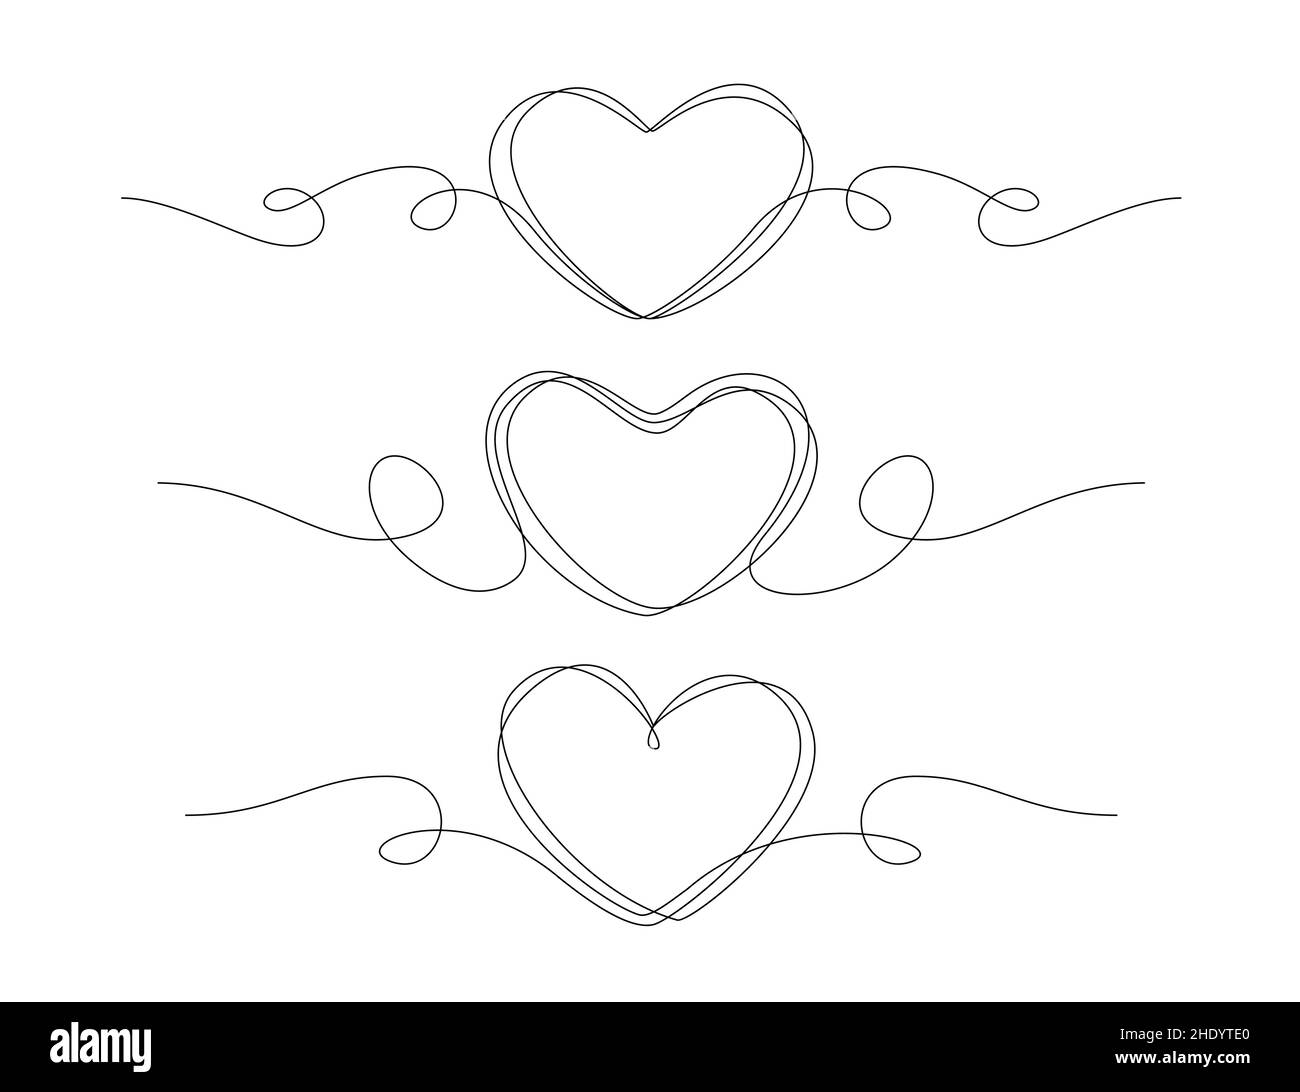 Coeur dessiné une ligne.Illustration vectorielle de mariage, d'esquisse de concept d'amour Illustration de Vecteur